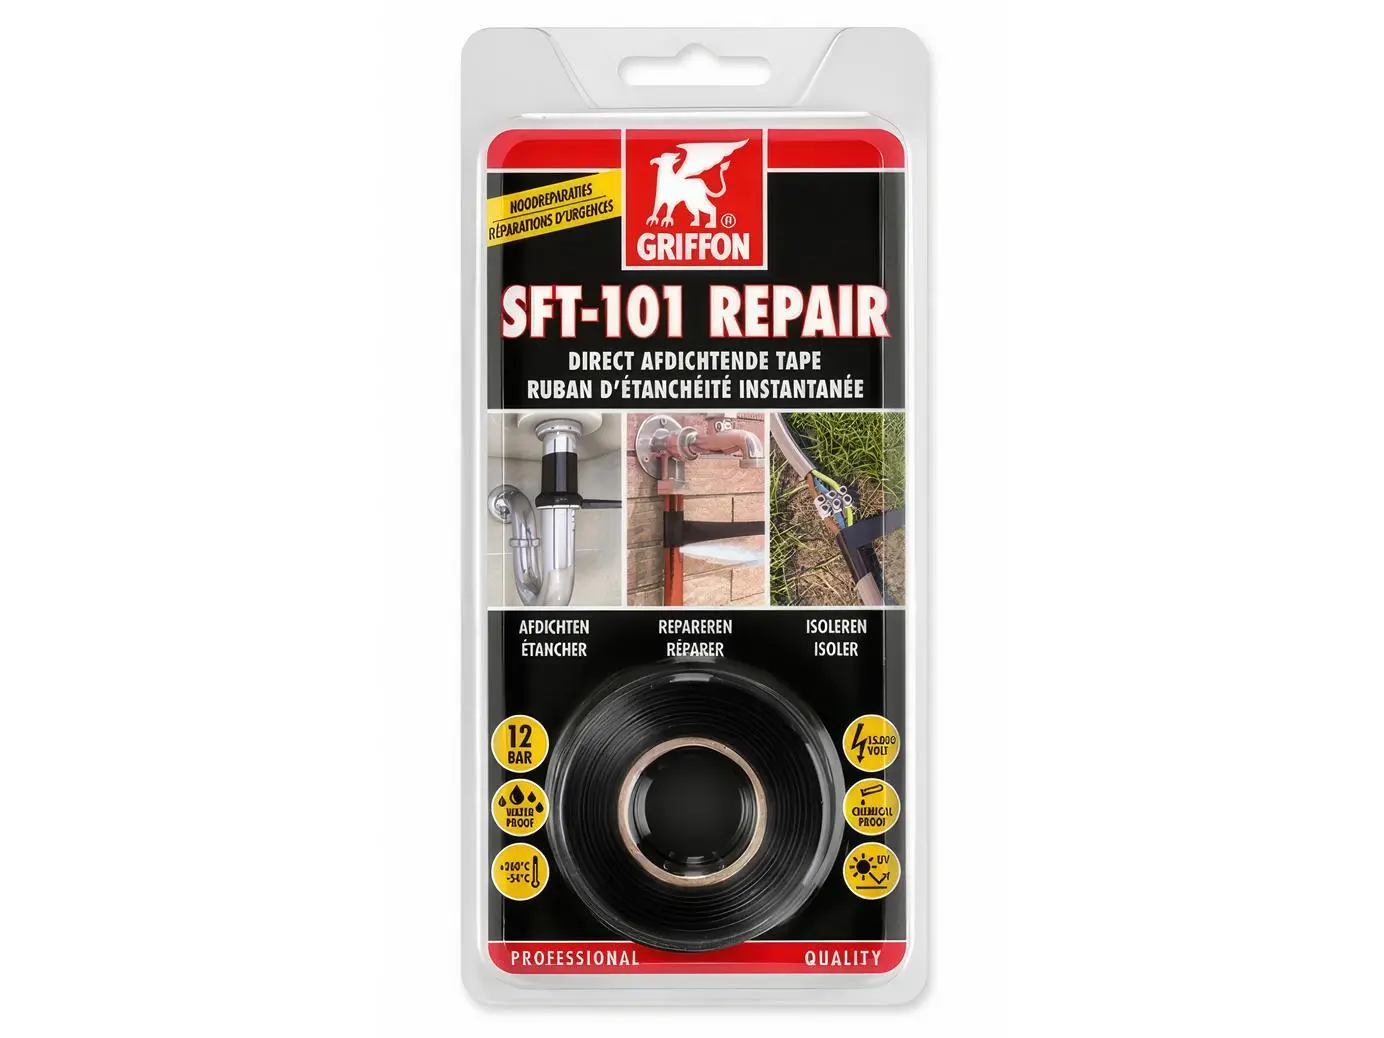 sft-101 repair